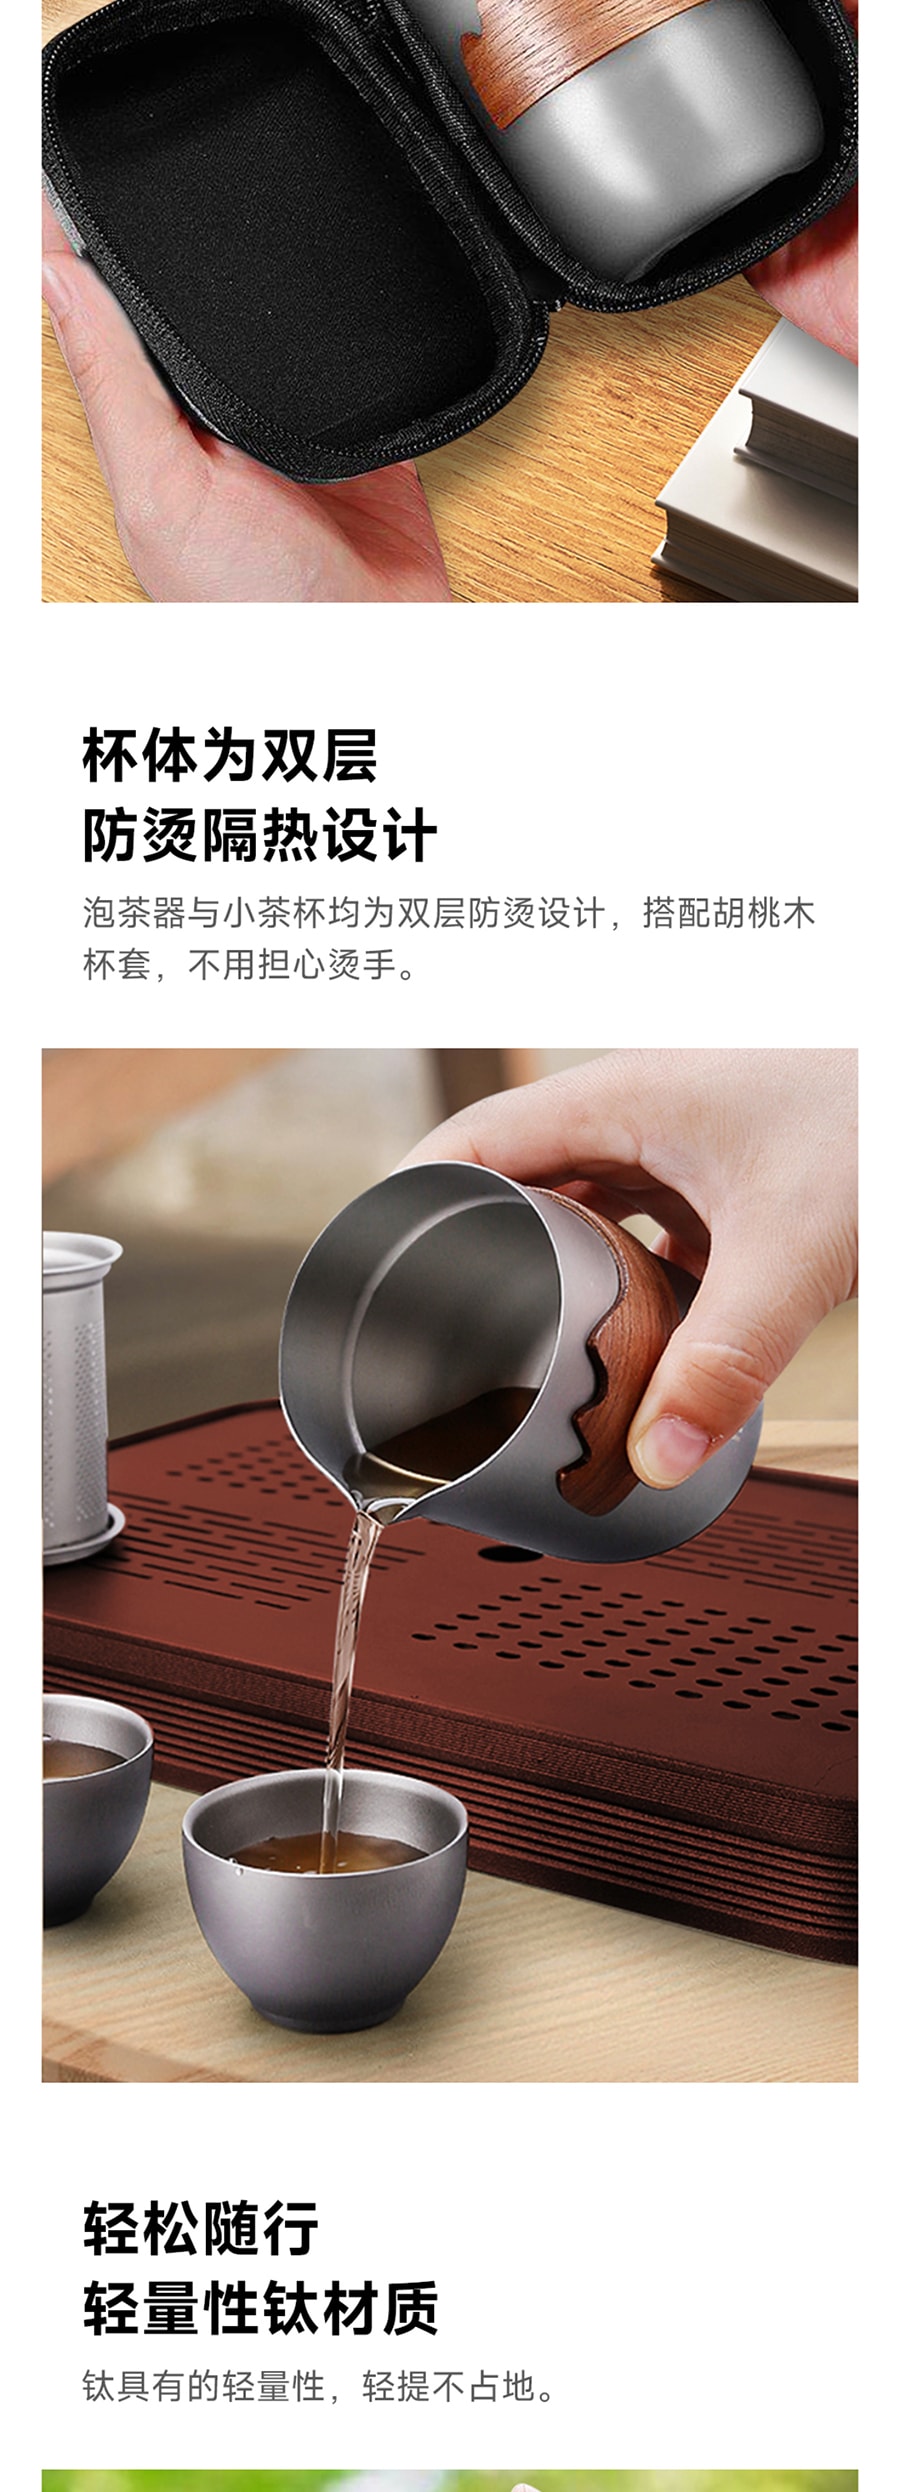 【中国直邮】小米有品  富士物语 纯钛便携泡茶茶具套组(配送随行包) 纯钛6件套组